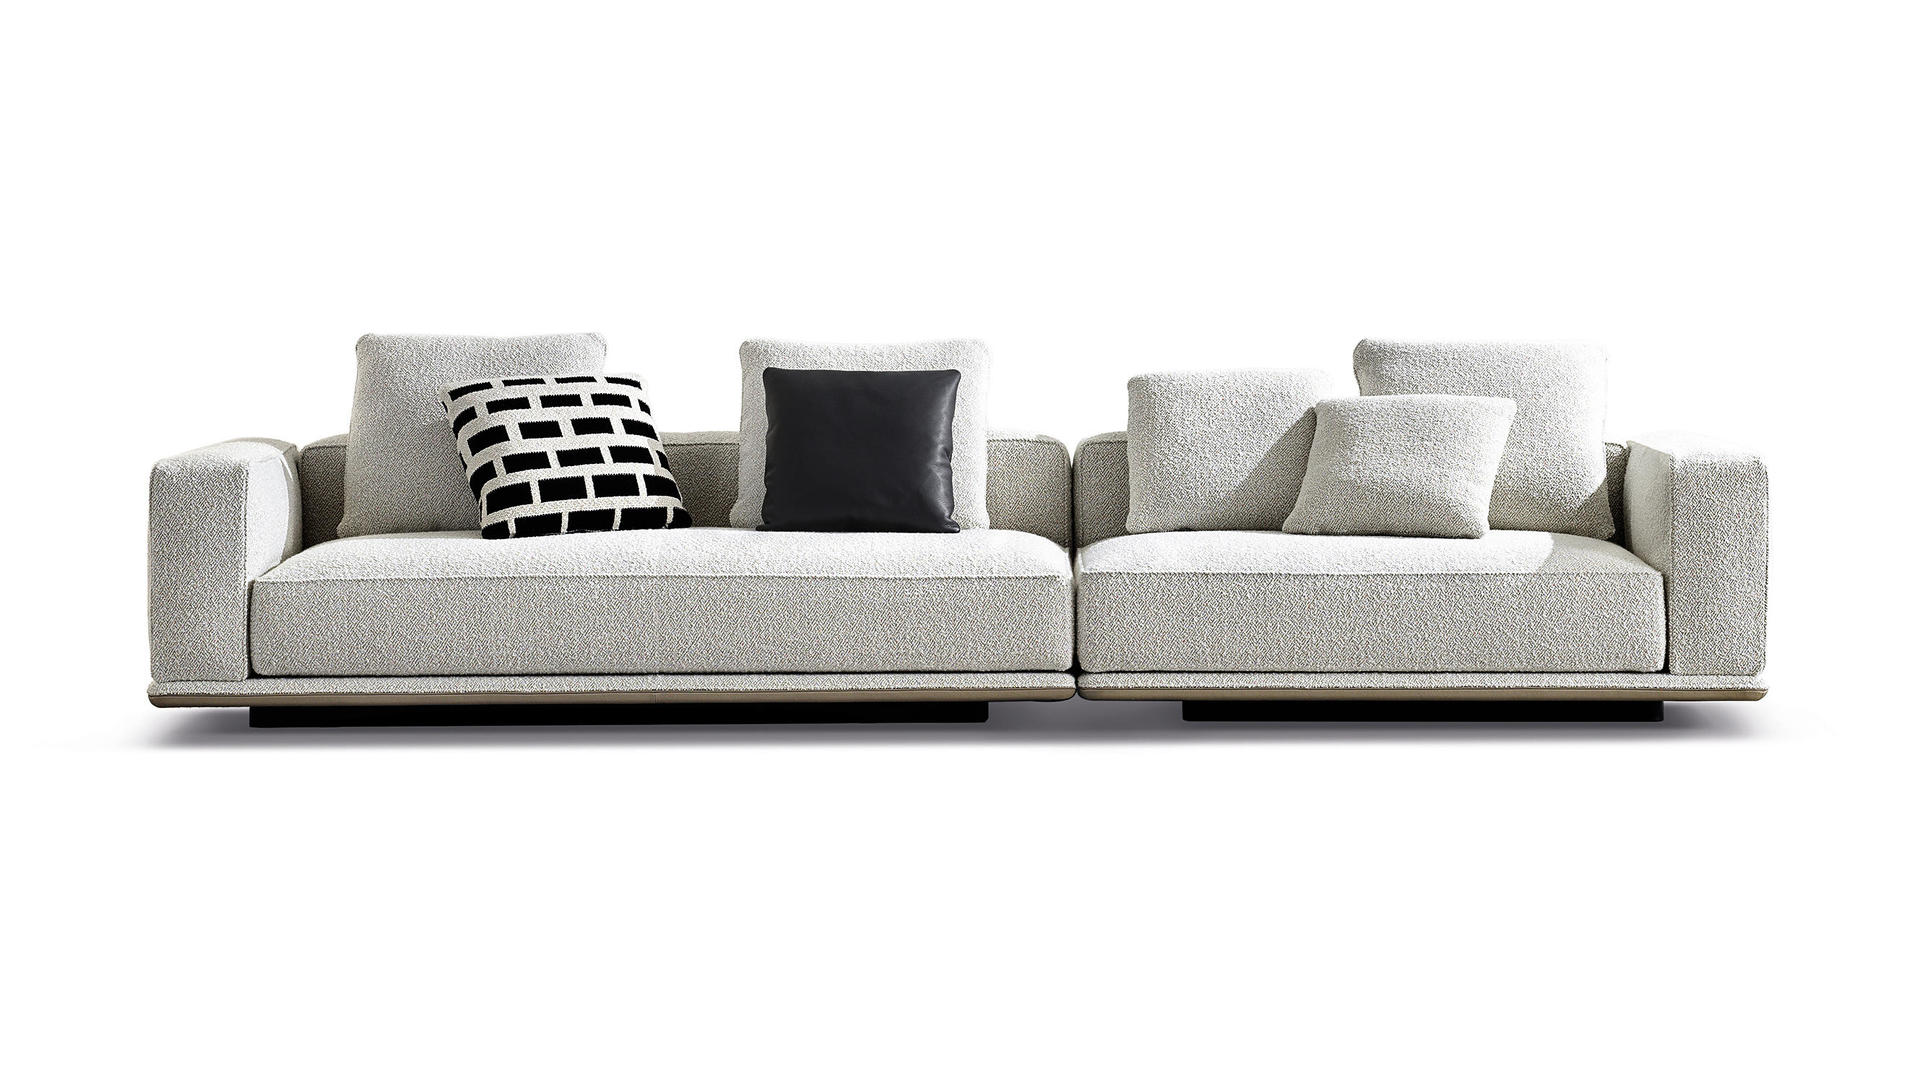 HORA Barneveld Minotti Horizonte bank modulaire sofa design meubelen designmeubelen 11.jpg